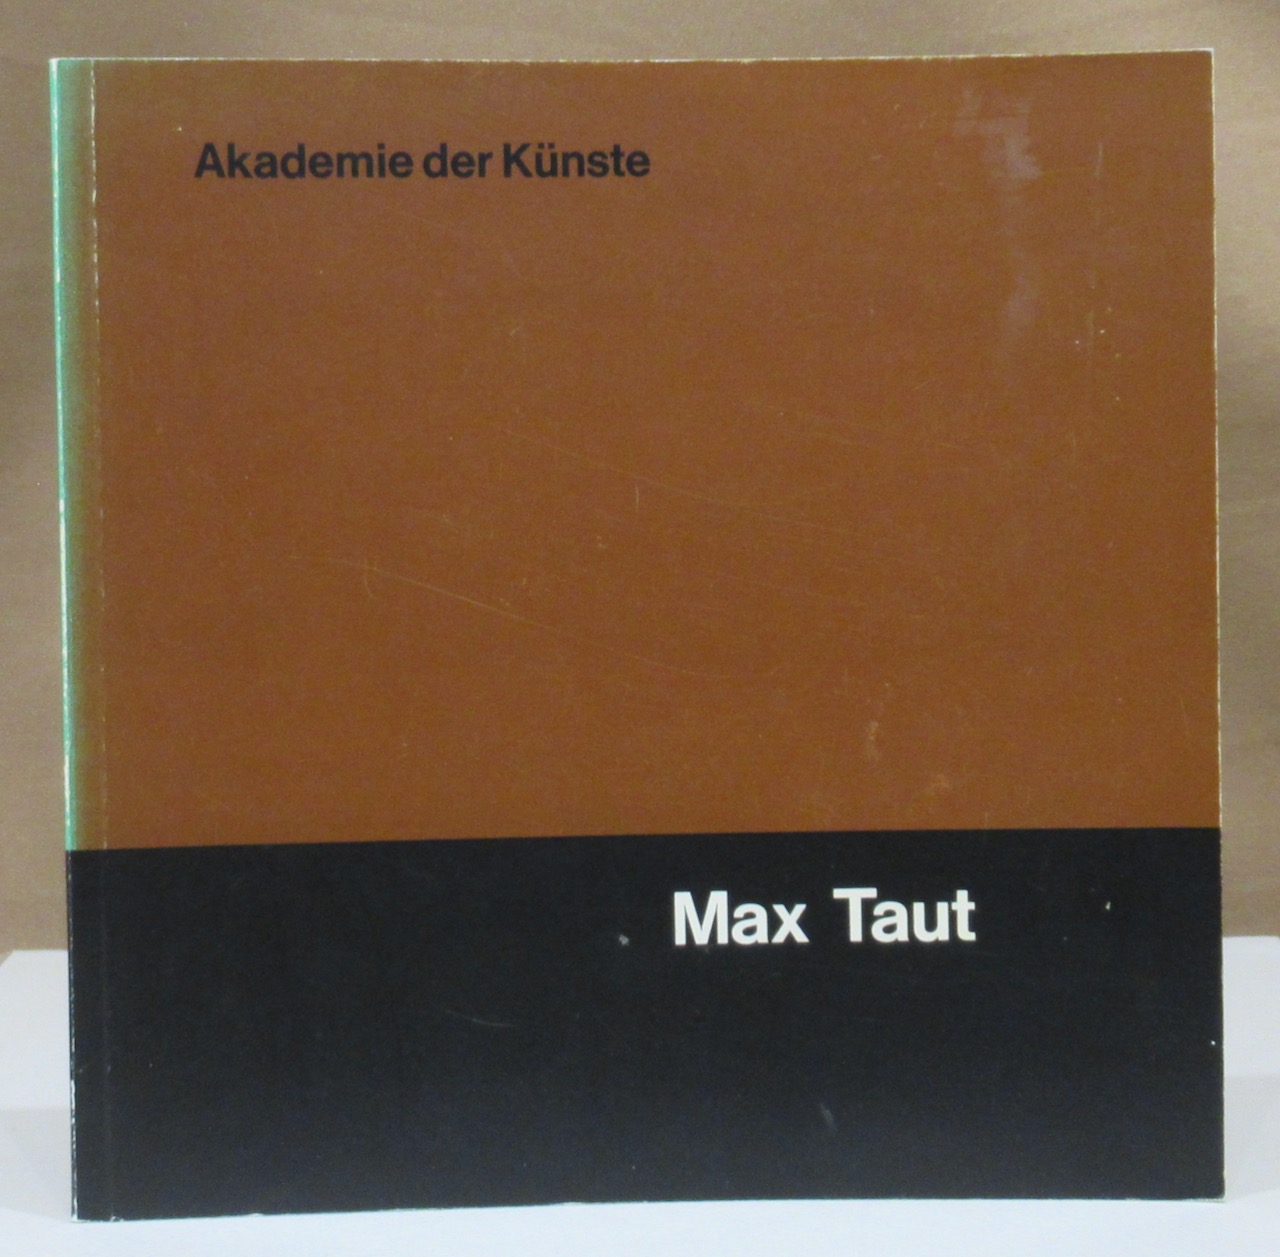 Katalog zur Ausstellung in der Akademie der Künste vom 19. Juli bis 9. August 1964. - Taut, Max.